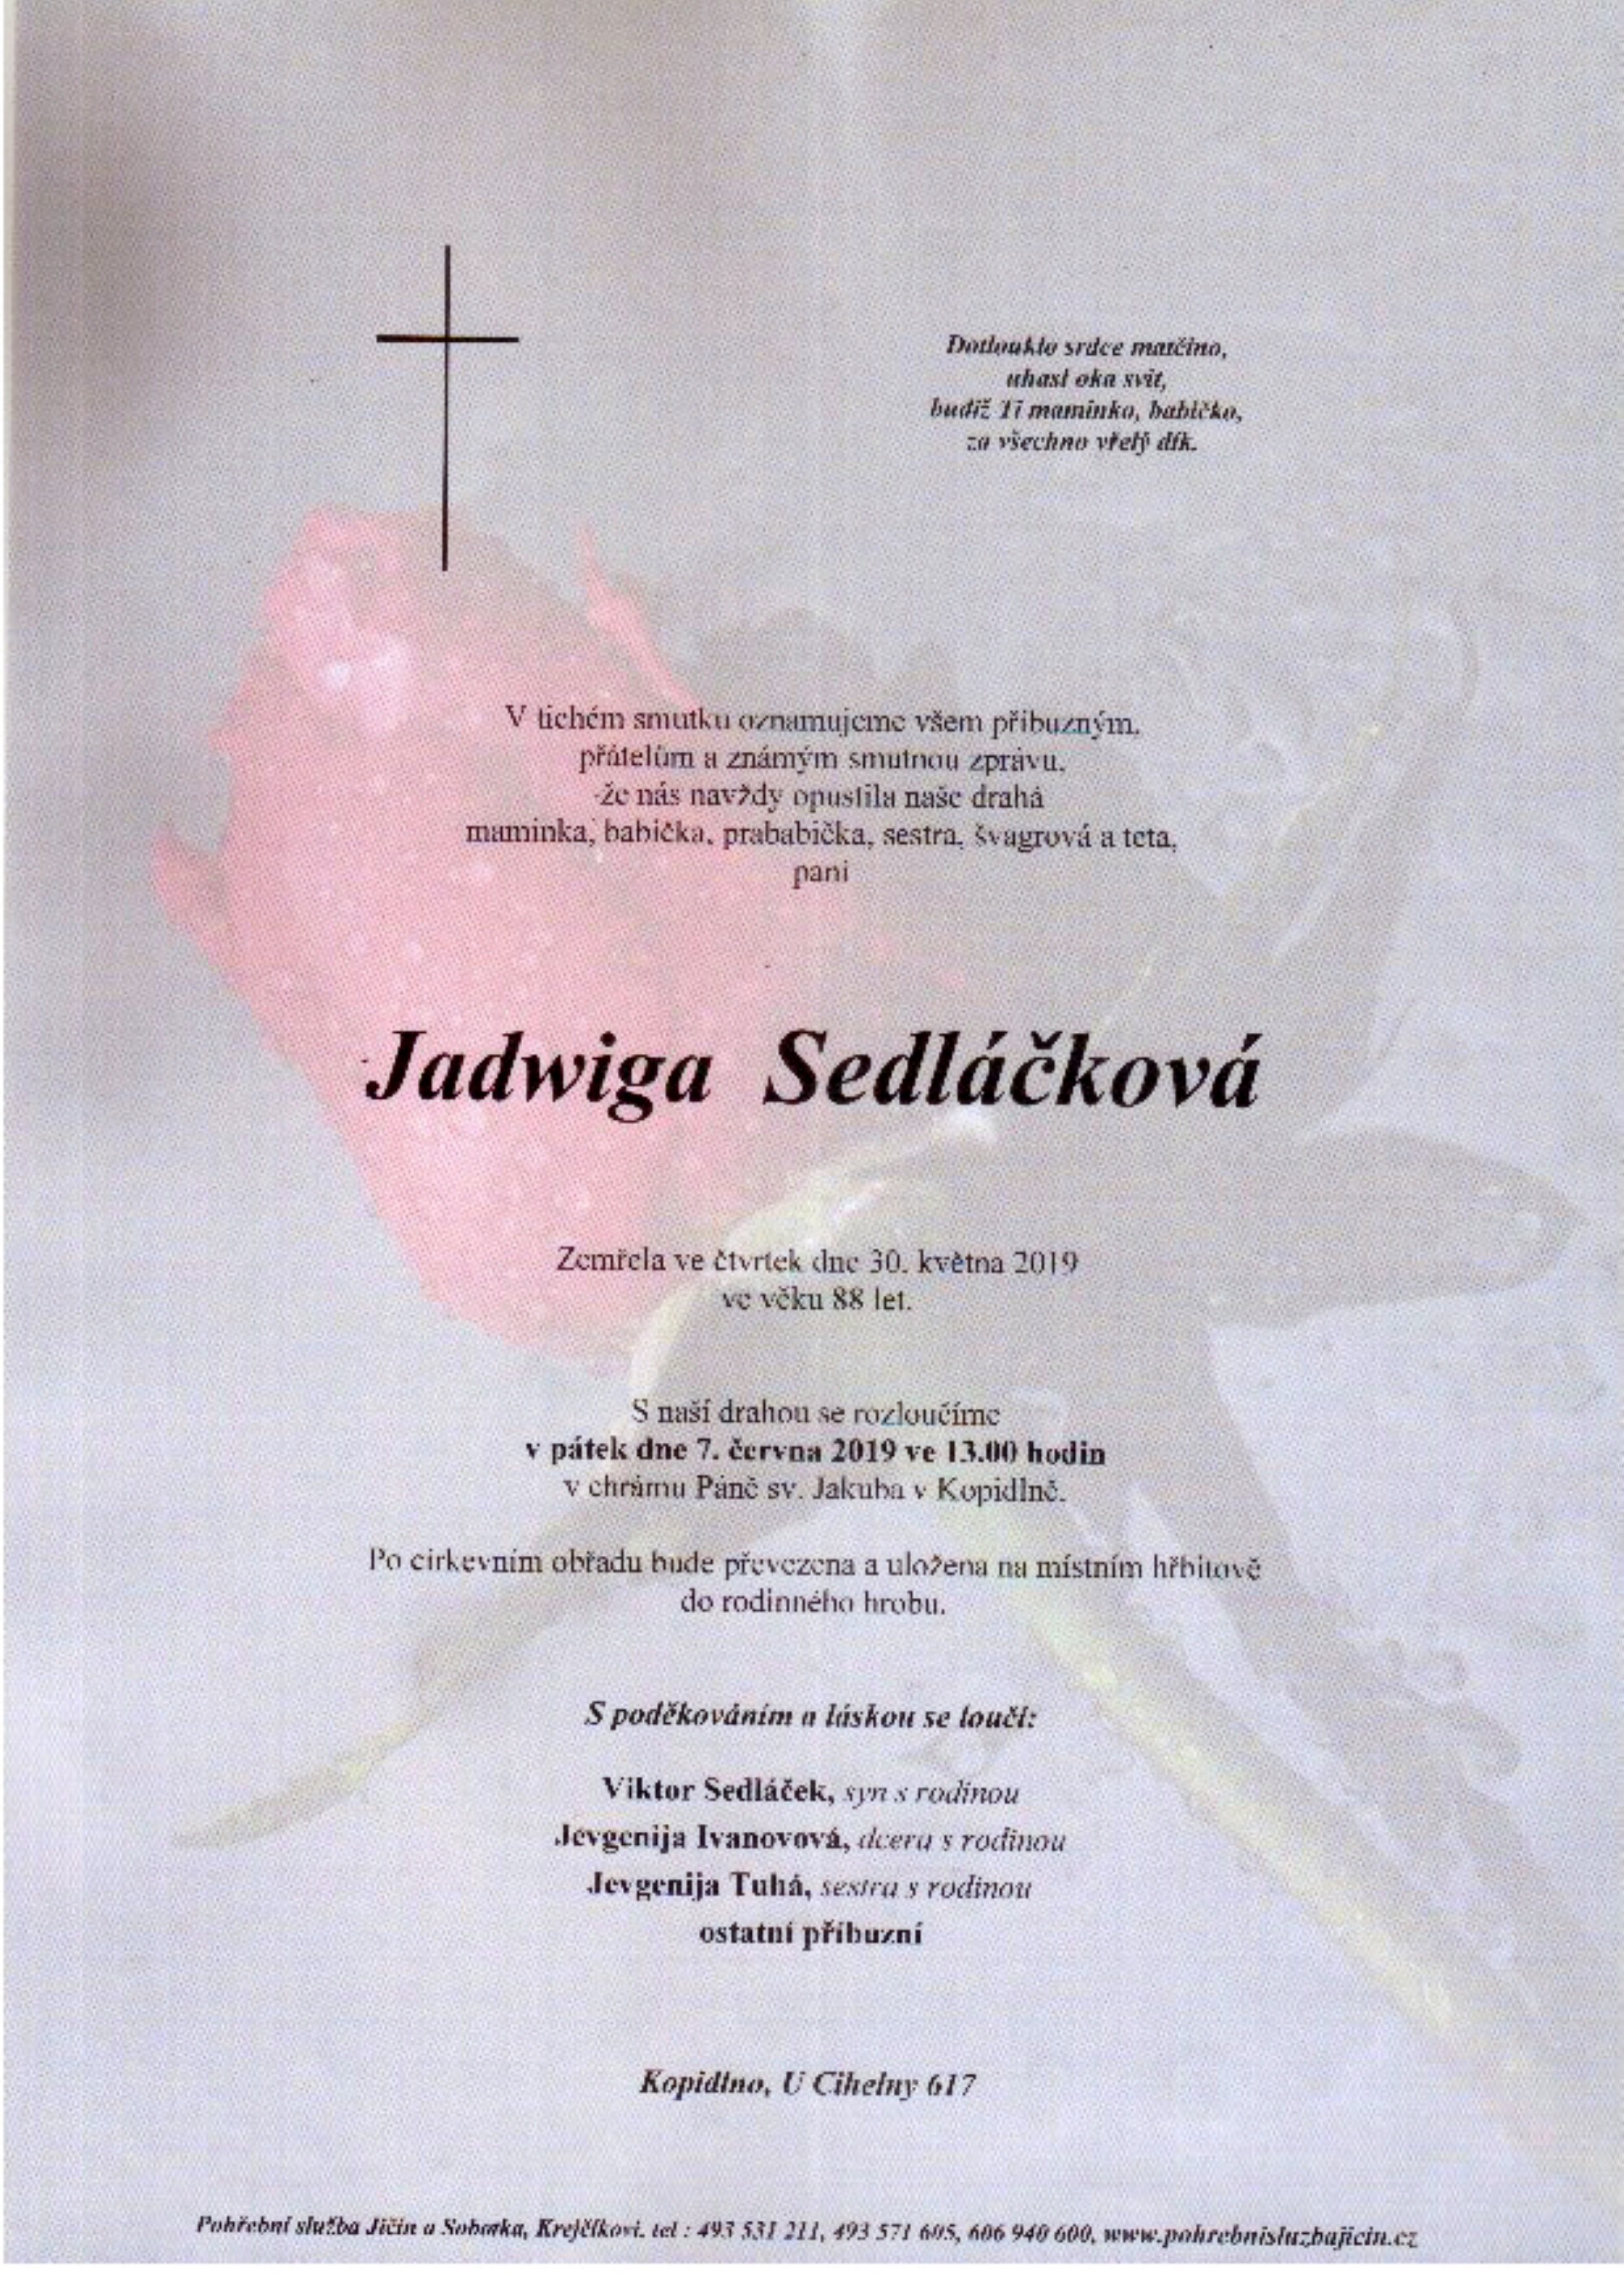 Jadwiga Sedláčková